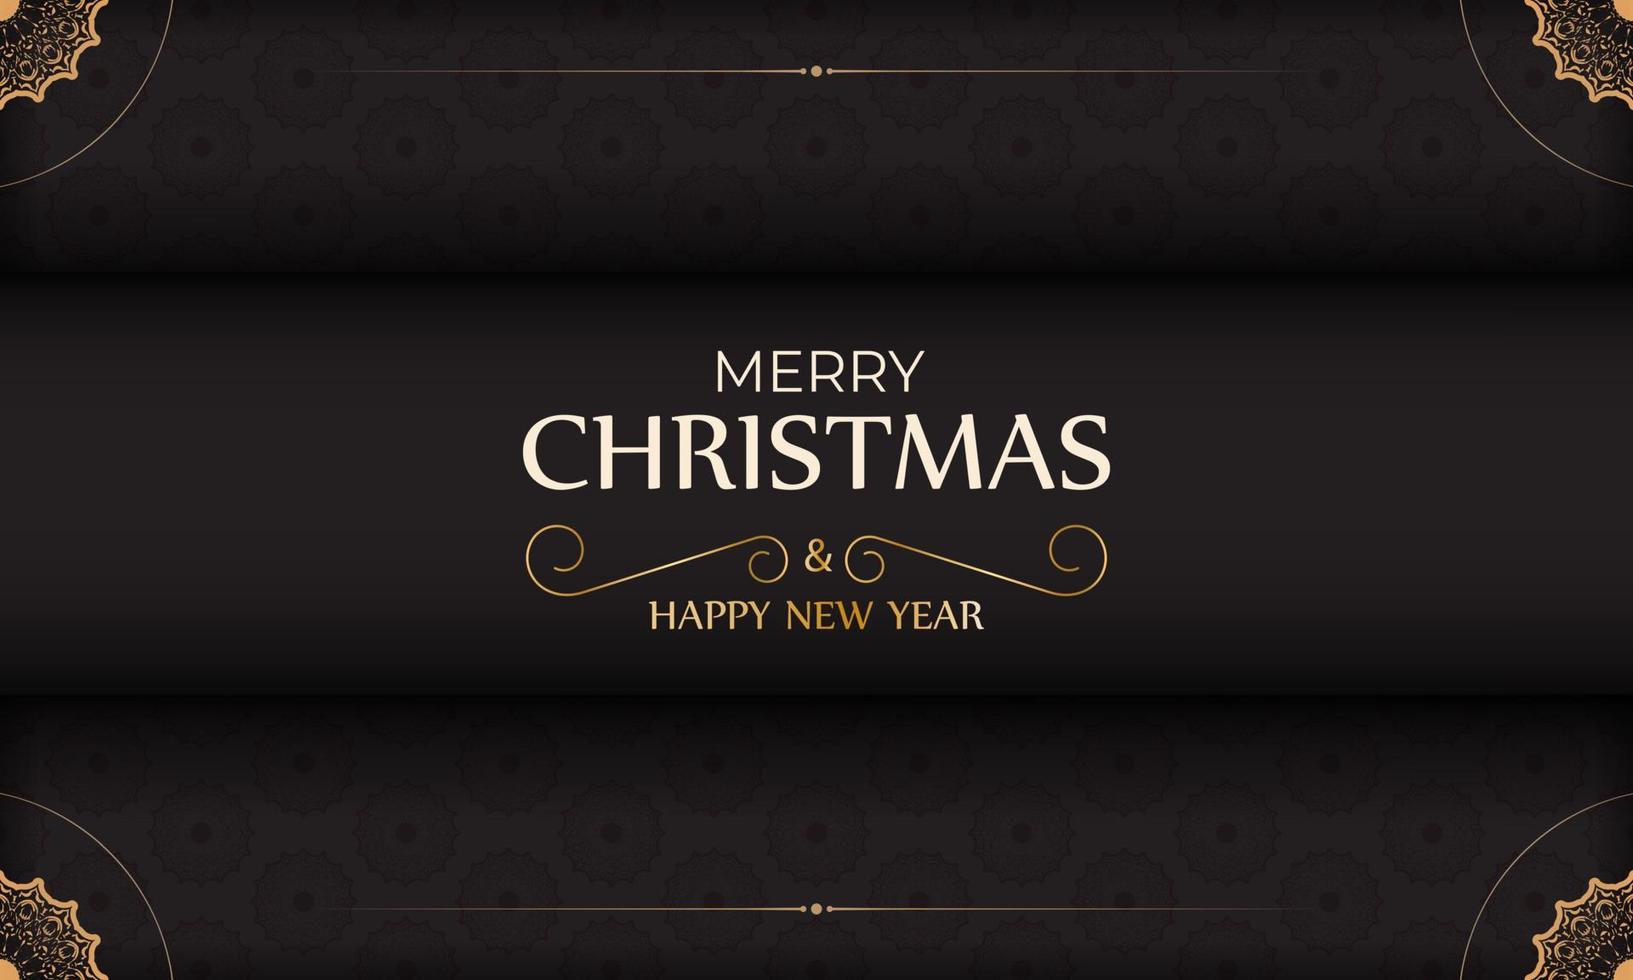 zwart vrolijk Kerstmis en gelukkig nieuw jaar poster met winter ornament. vector